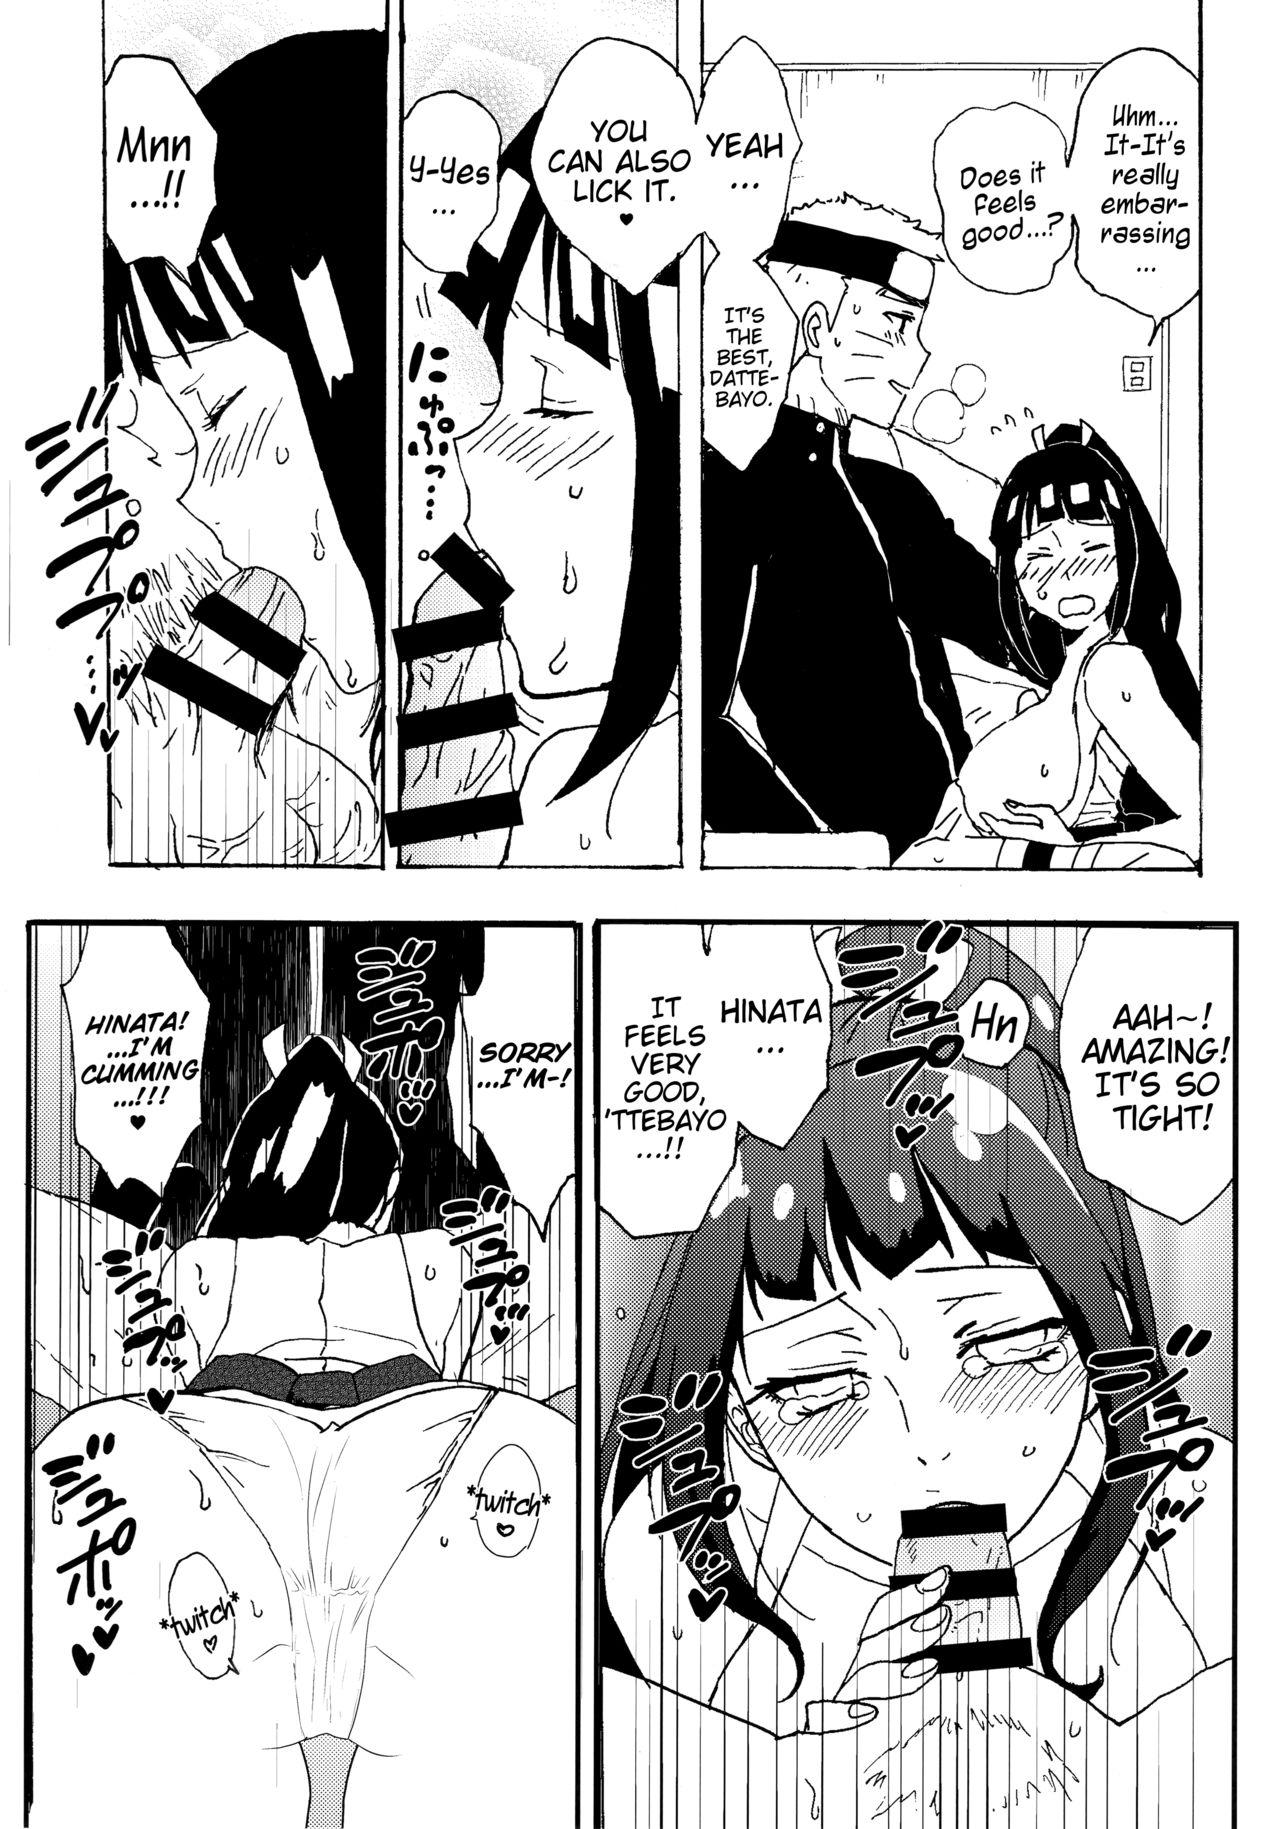 Fishnets Shinkon Hinata no Kunoichi Cosplay dattebayo! | Newlywed Hinata's kunoichi cosplay, dattebayo! - Naruto Milk - Page 8